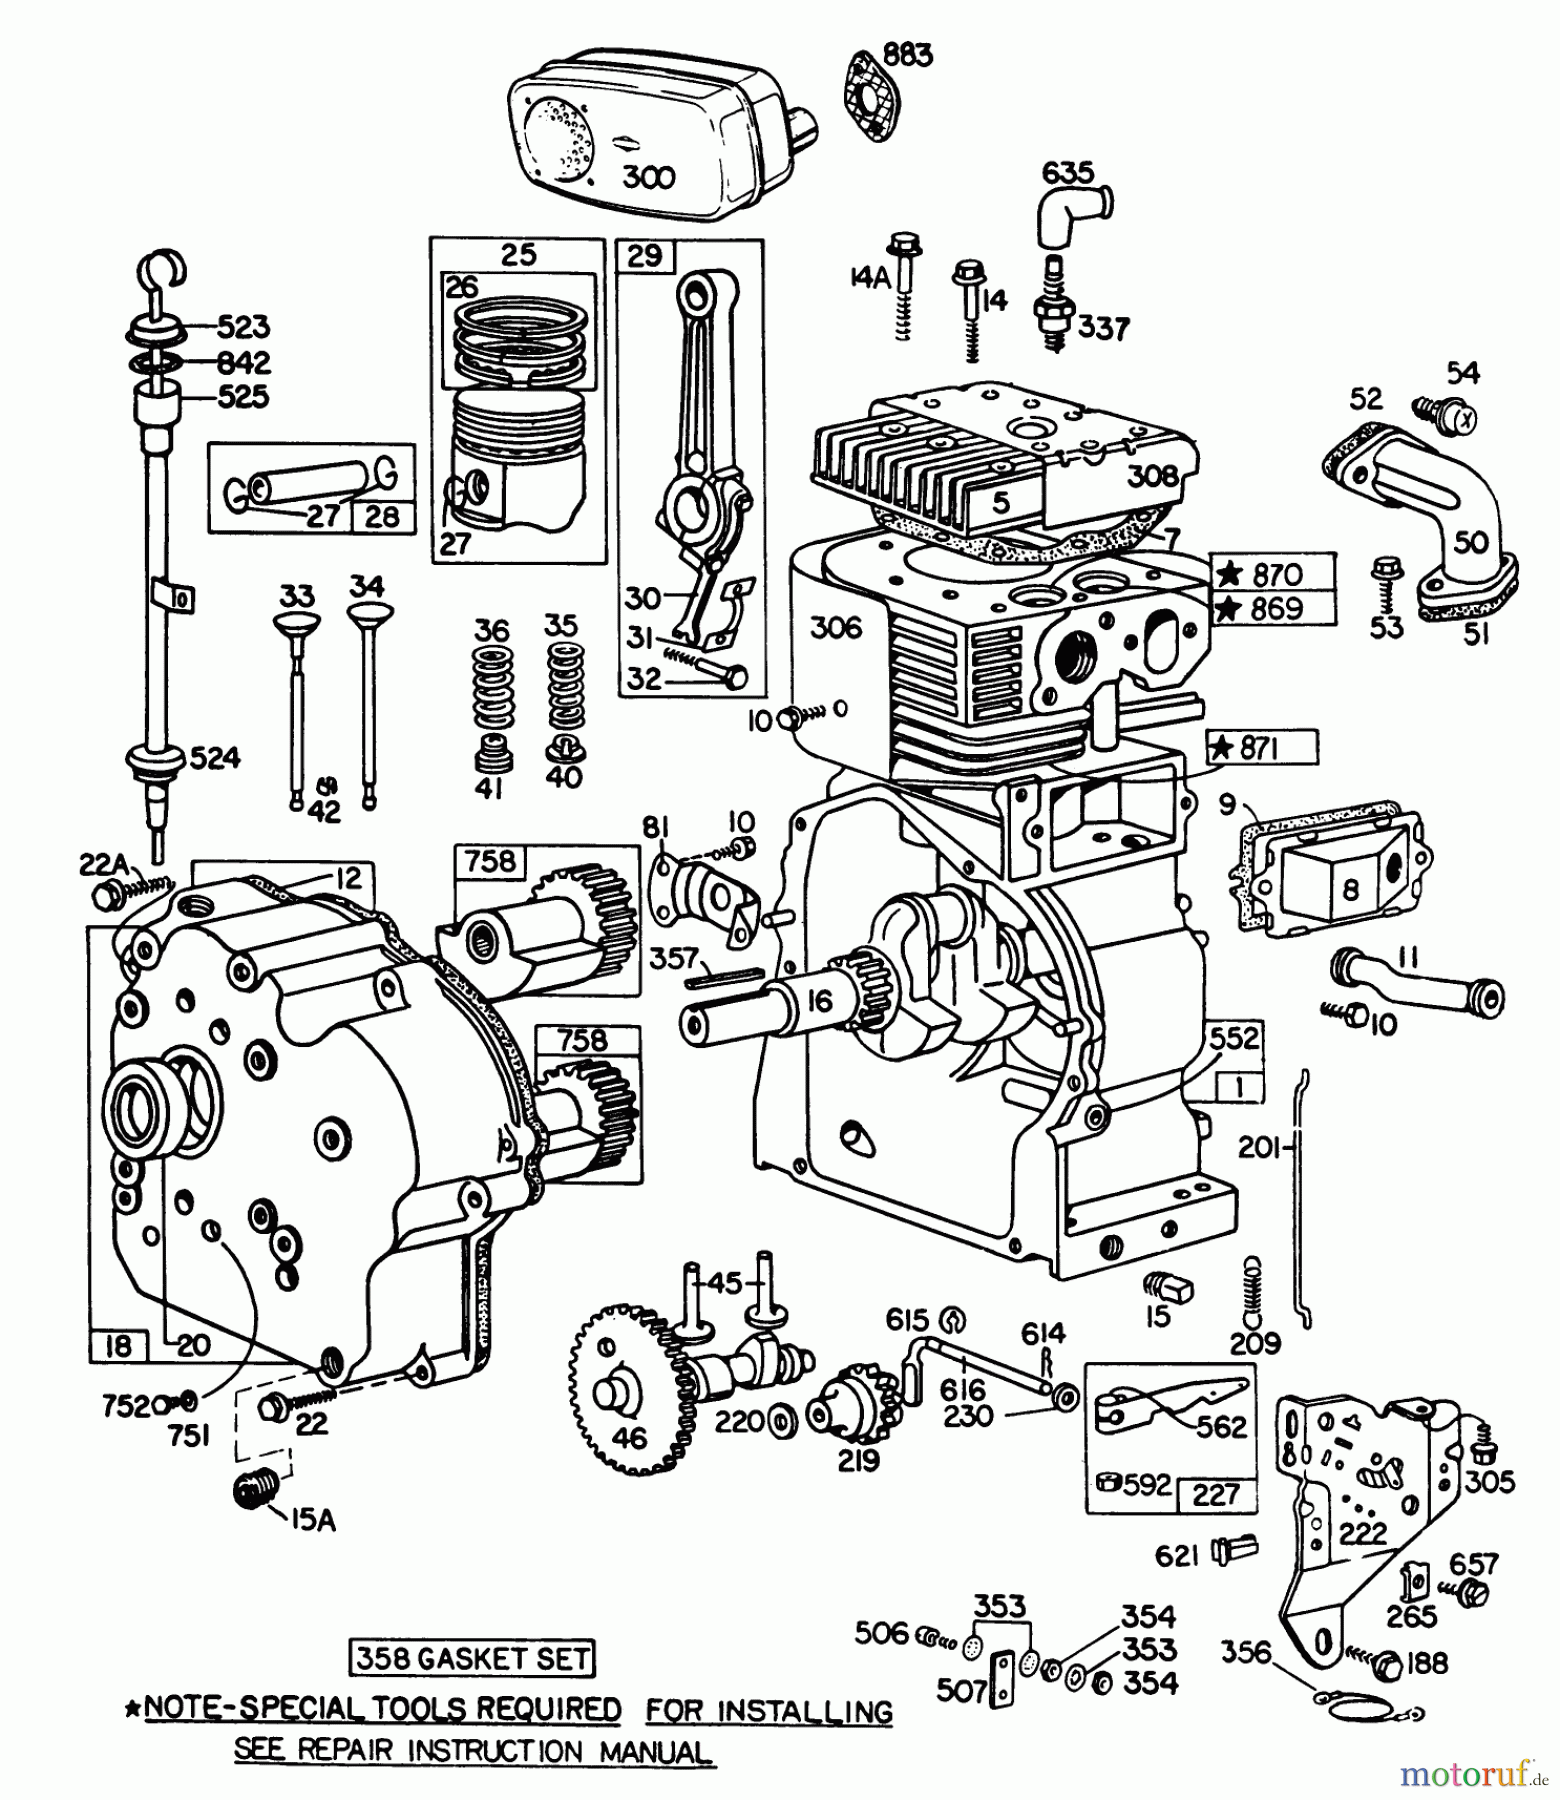  Toro Neu Snow Blowers/Snow Throwers Seite 1 38160 (1132) - Toro 1132 Snowthrower, 1982 (2000001-2999999) ENGINE BRIGGS & STRATTON MODEL NO. 252416-0190-01 #1